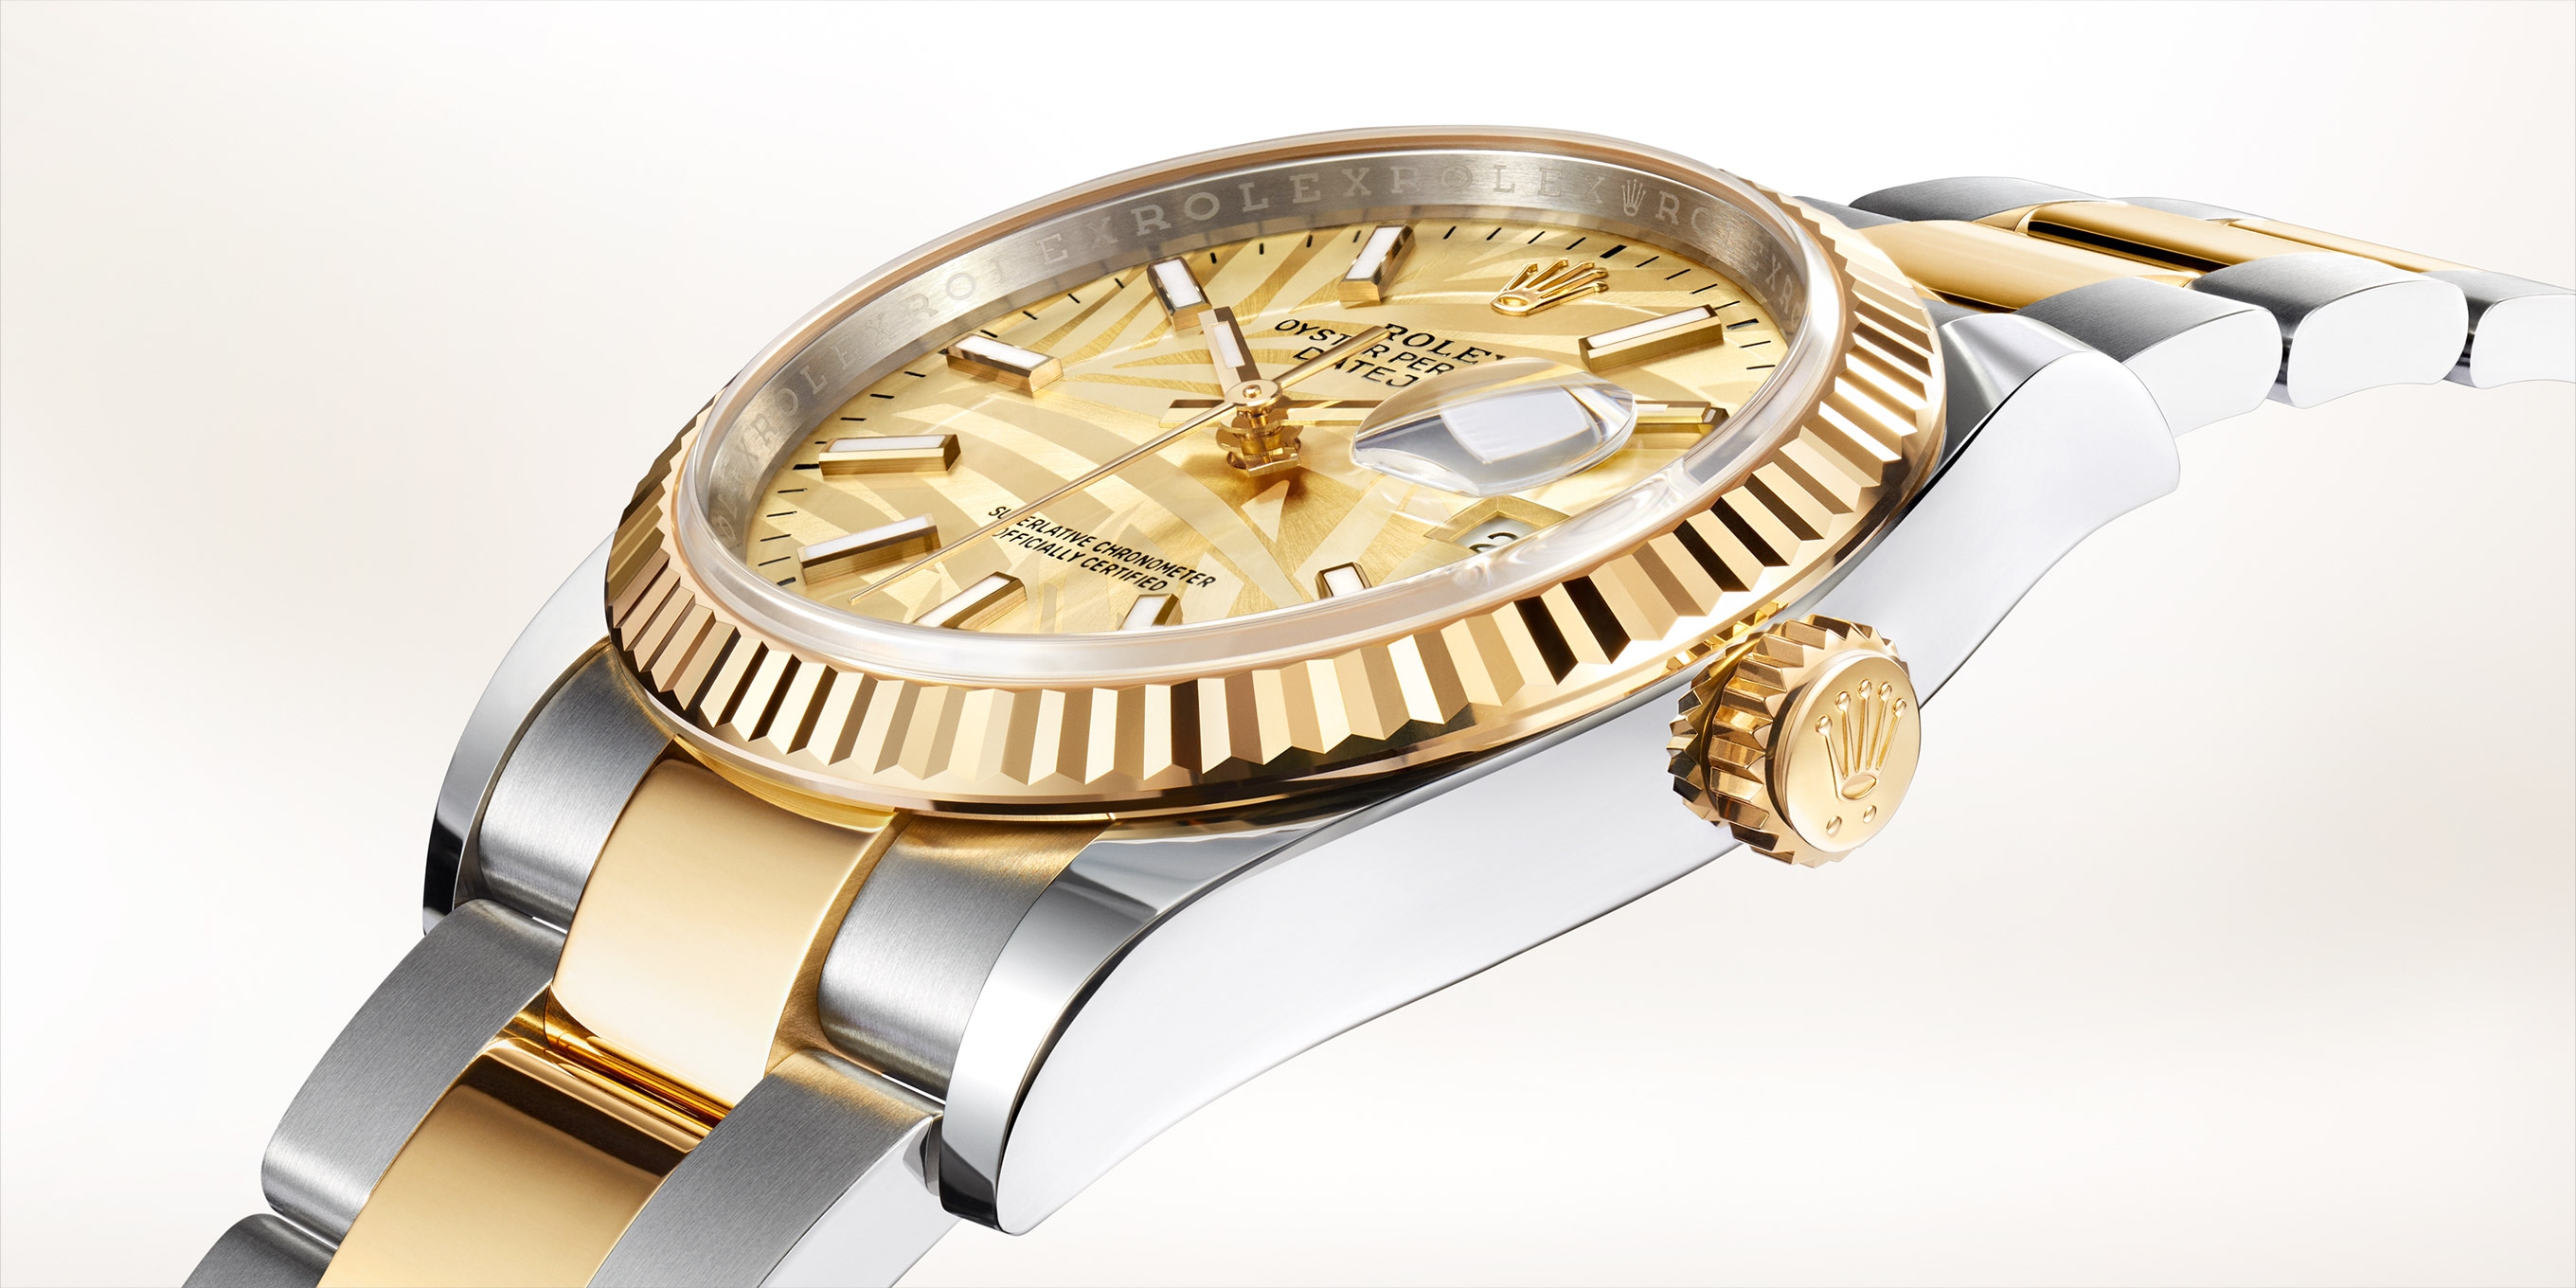 Rolex Rolex ROLEX Day-Date 118238MR White Dial New Watch Men's Watch